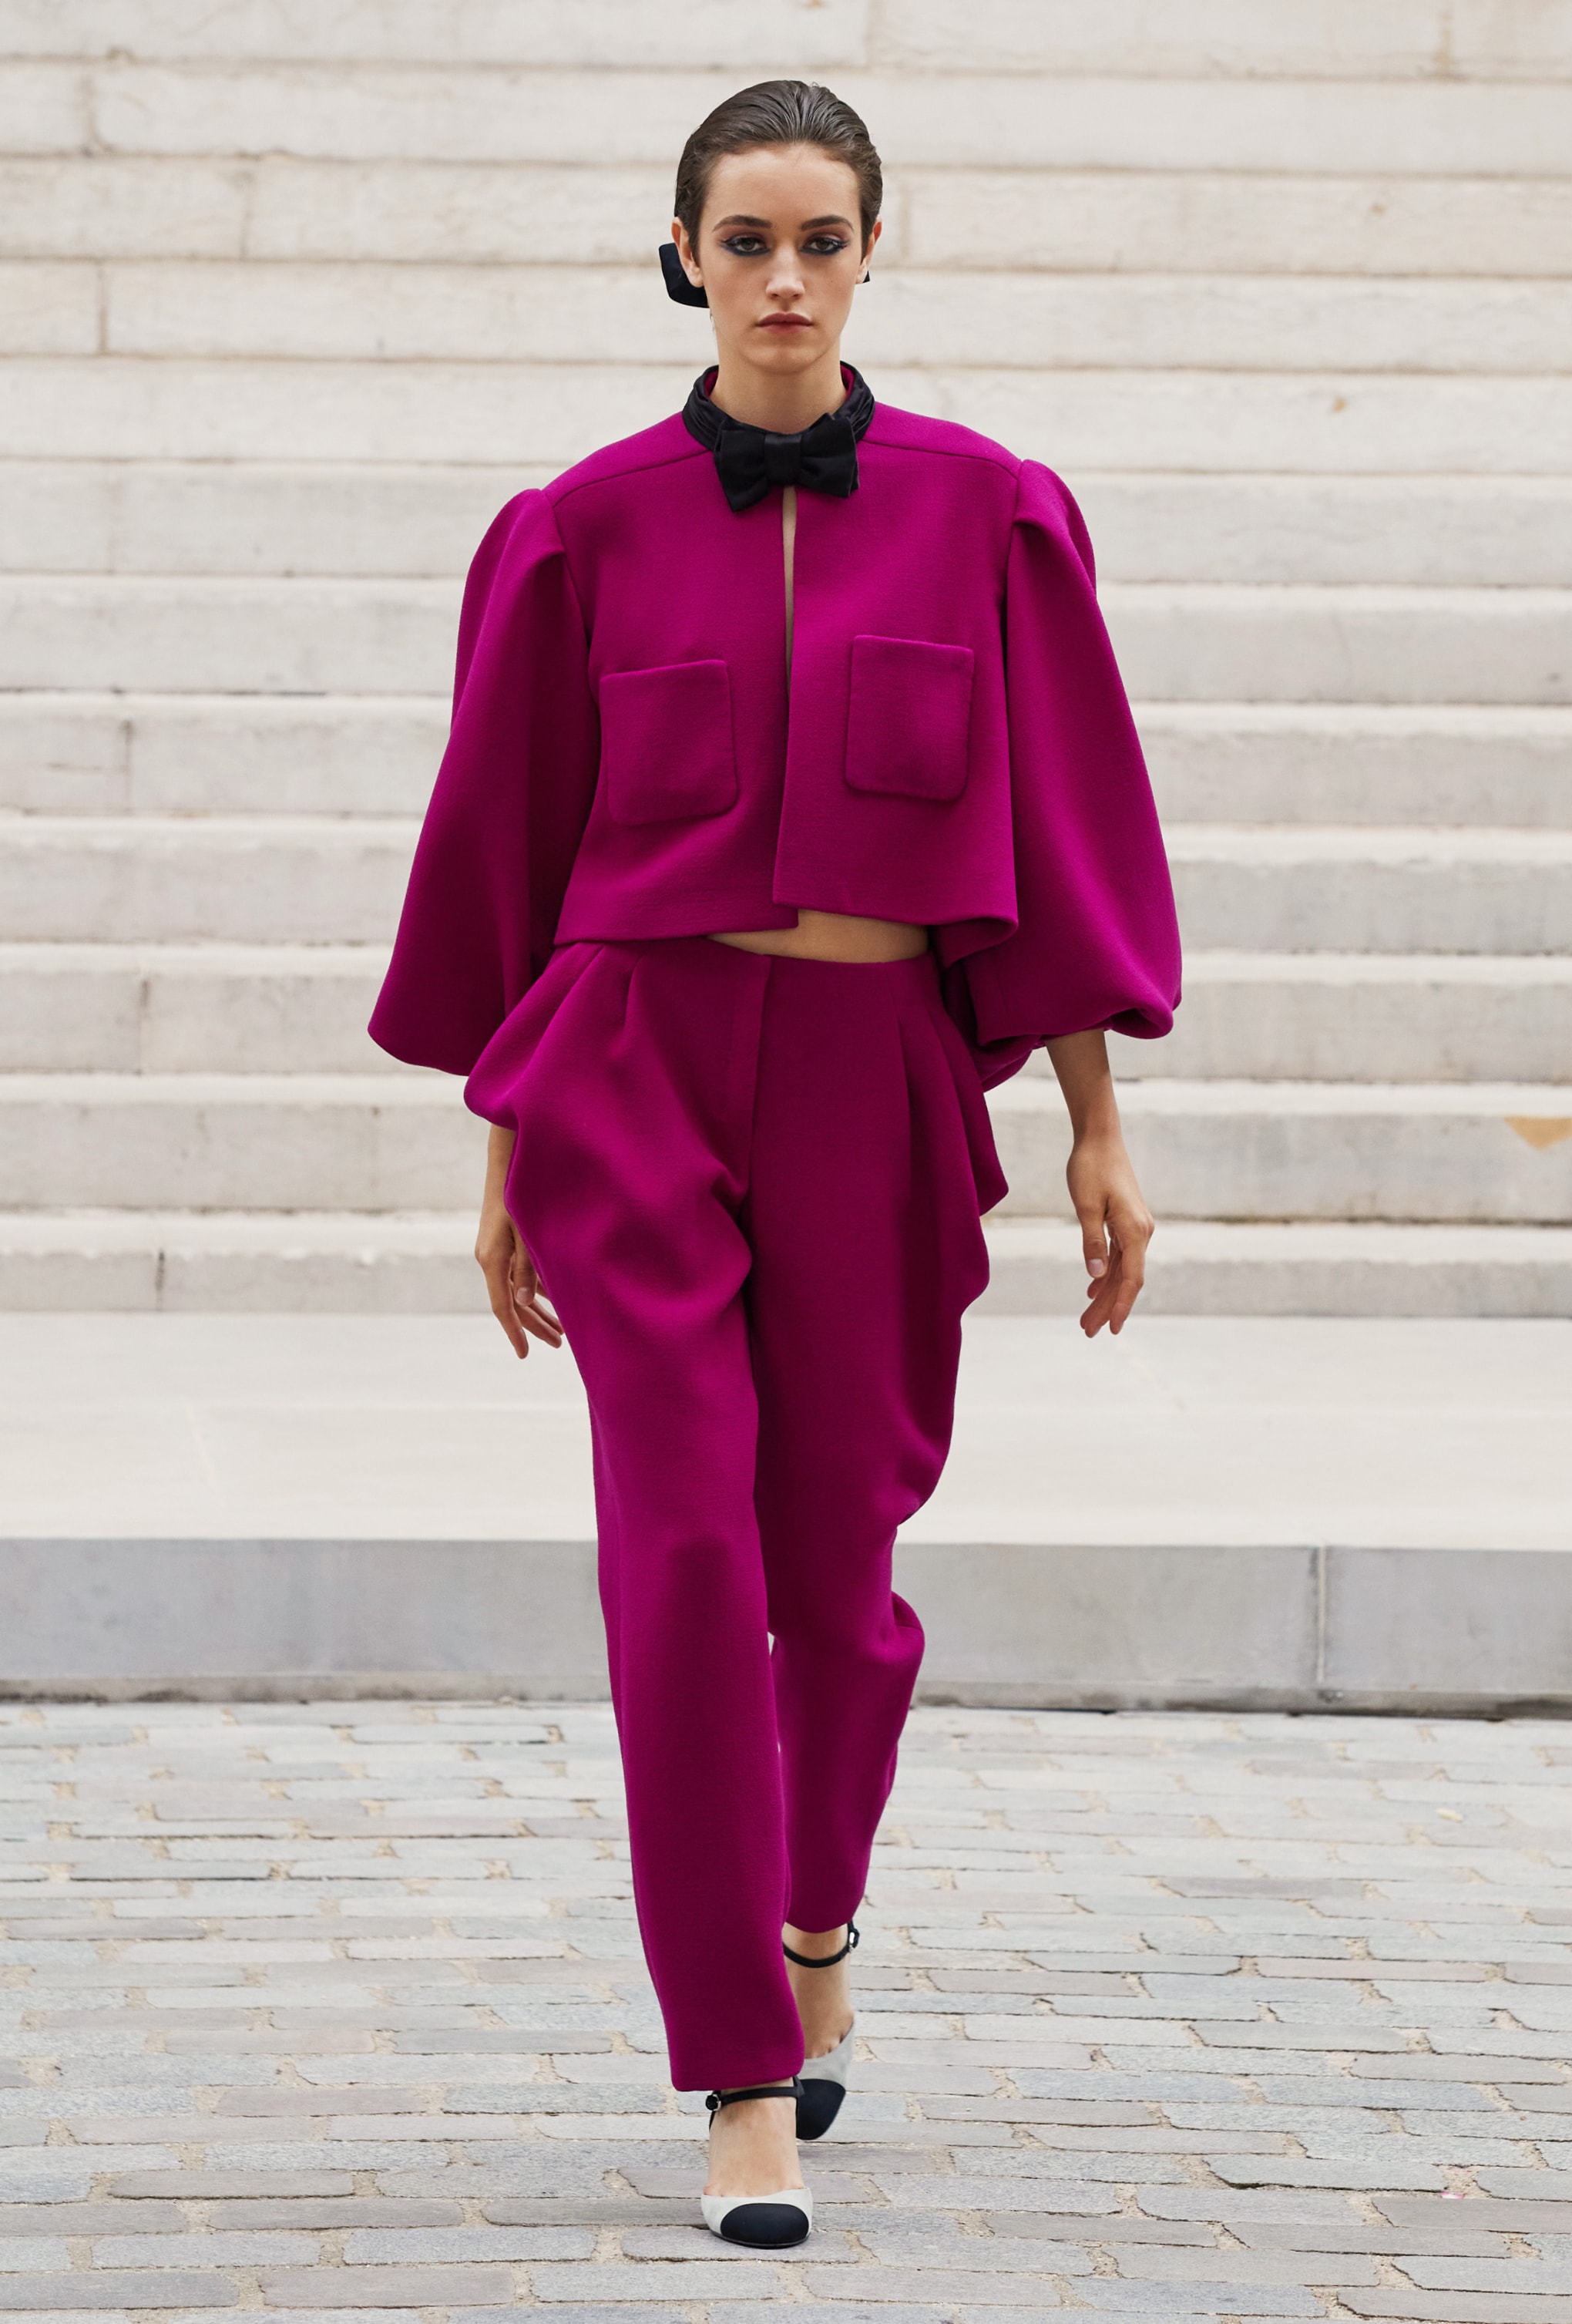 CHANEL 2021/22 FW Haute Couture Virginie Viard